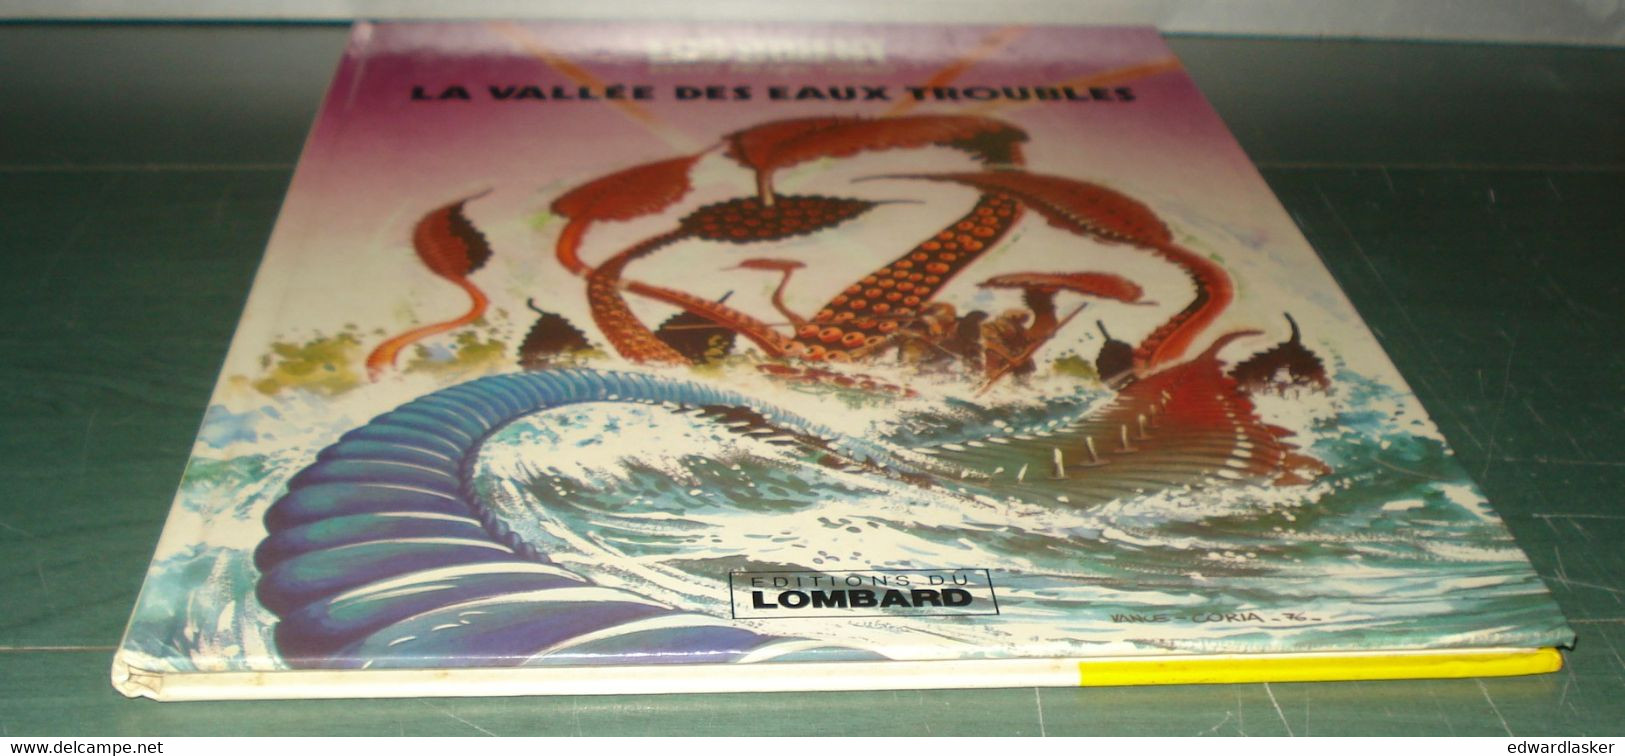 LUC ORIENT N°11 : La Vallée Des Eaux Troubles - Lombard - 2ème édition